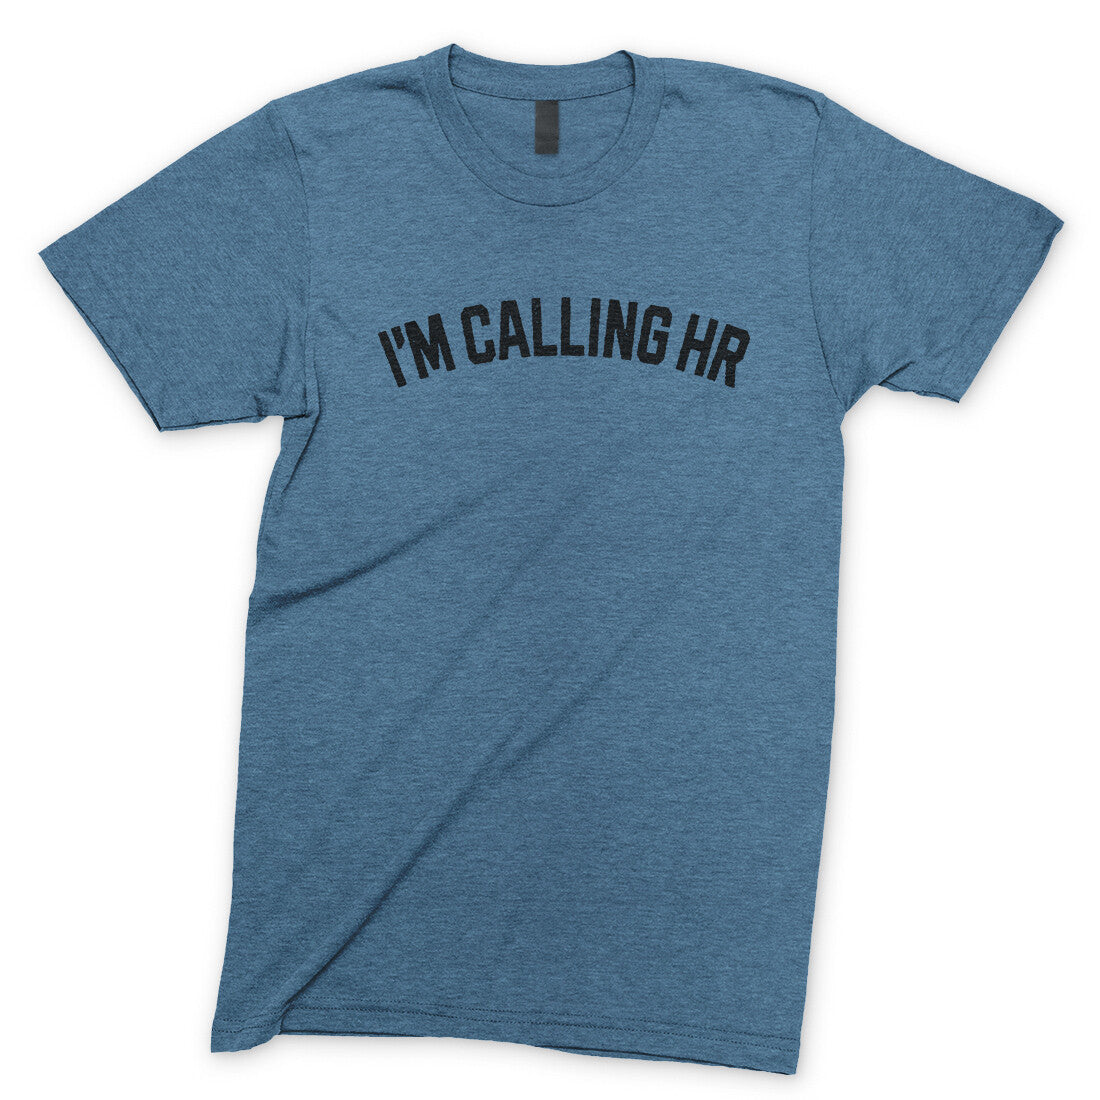 I'm Calling HR in Heather Indigo Color